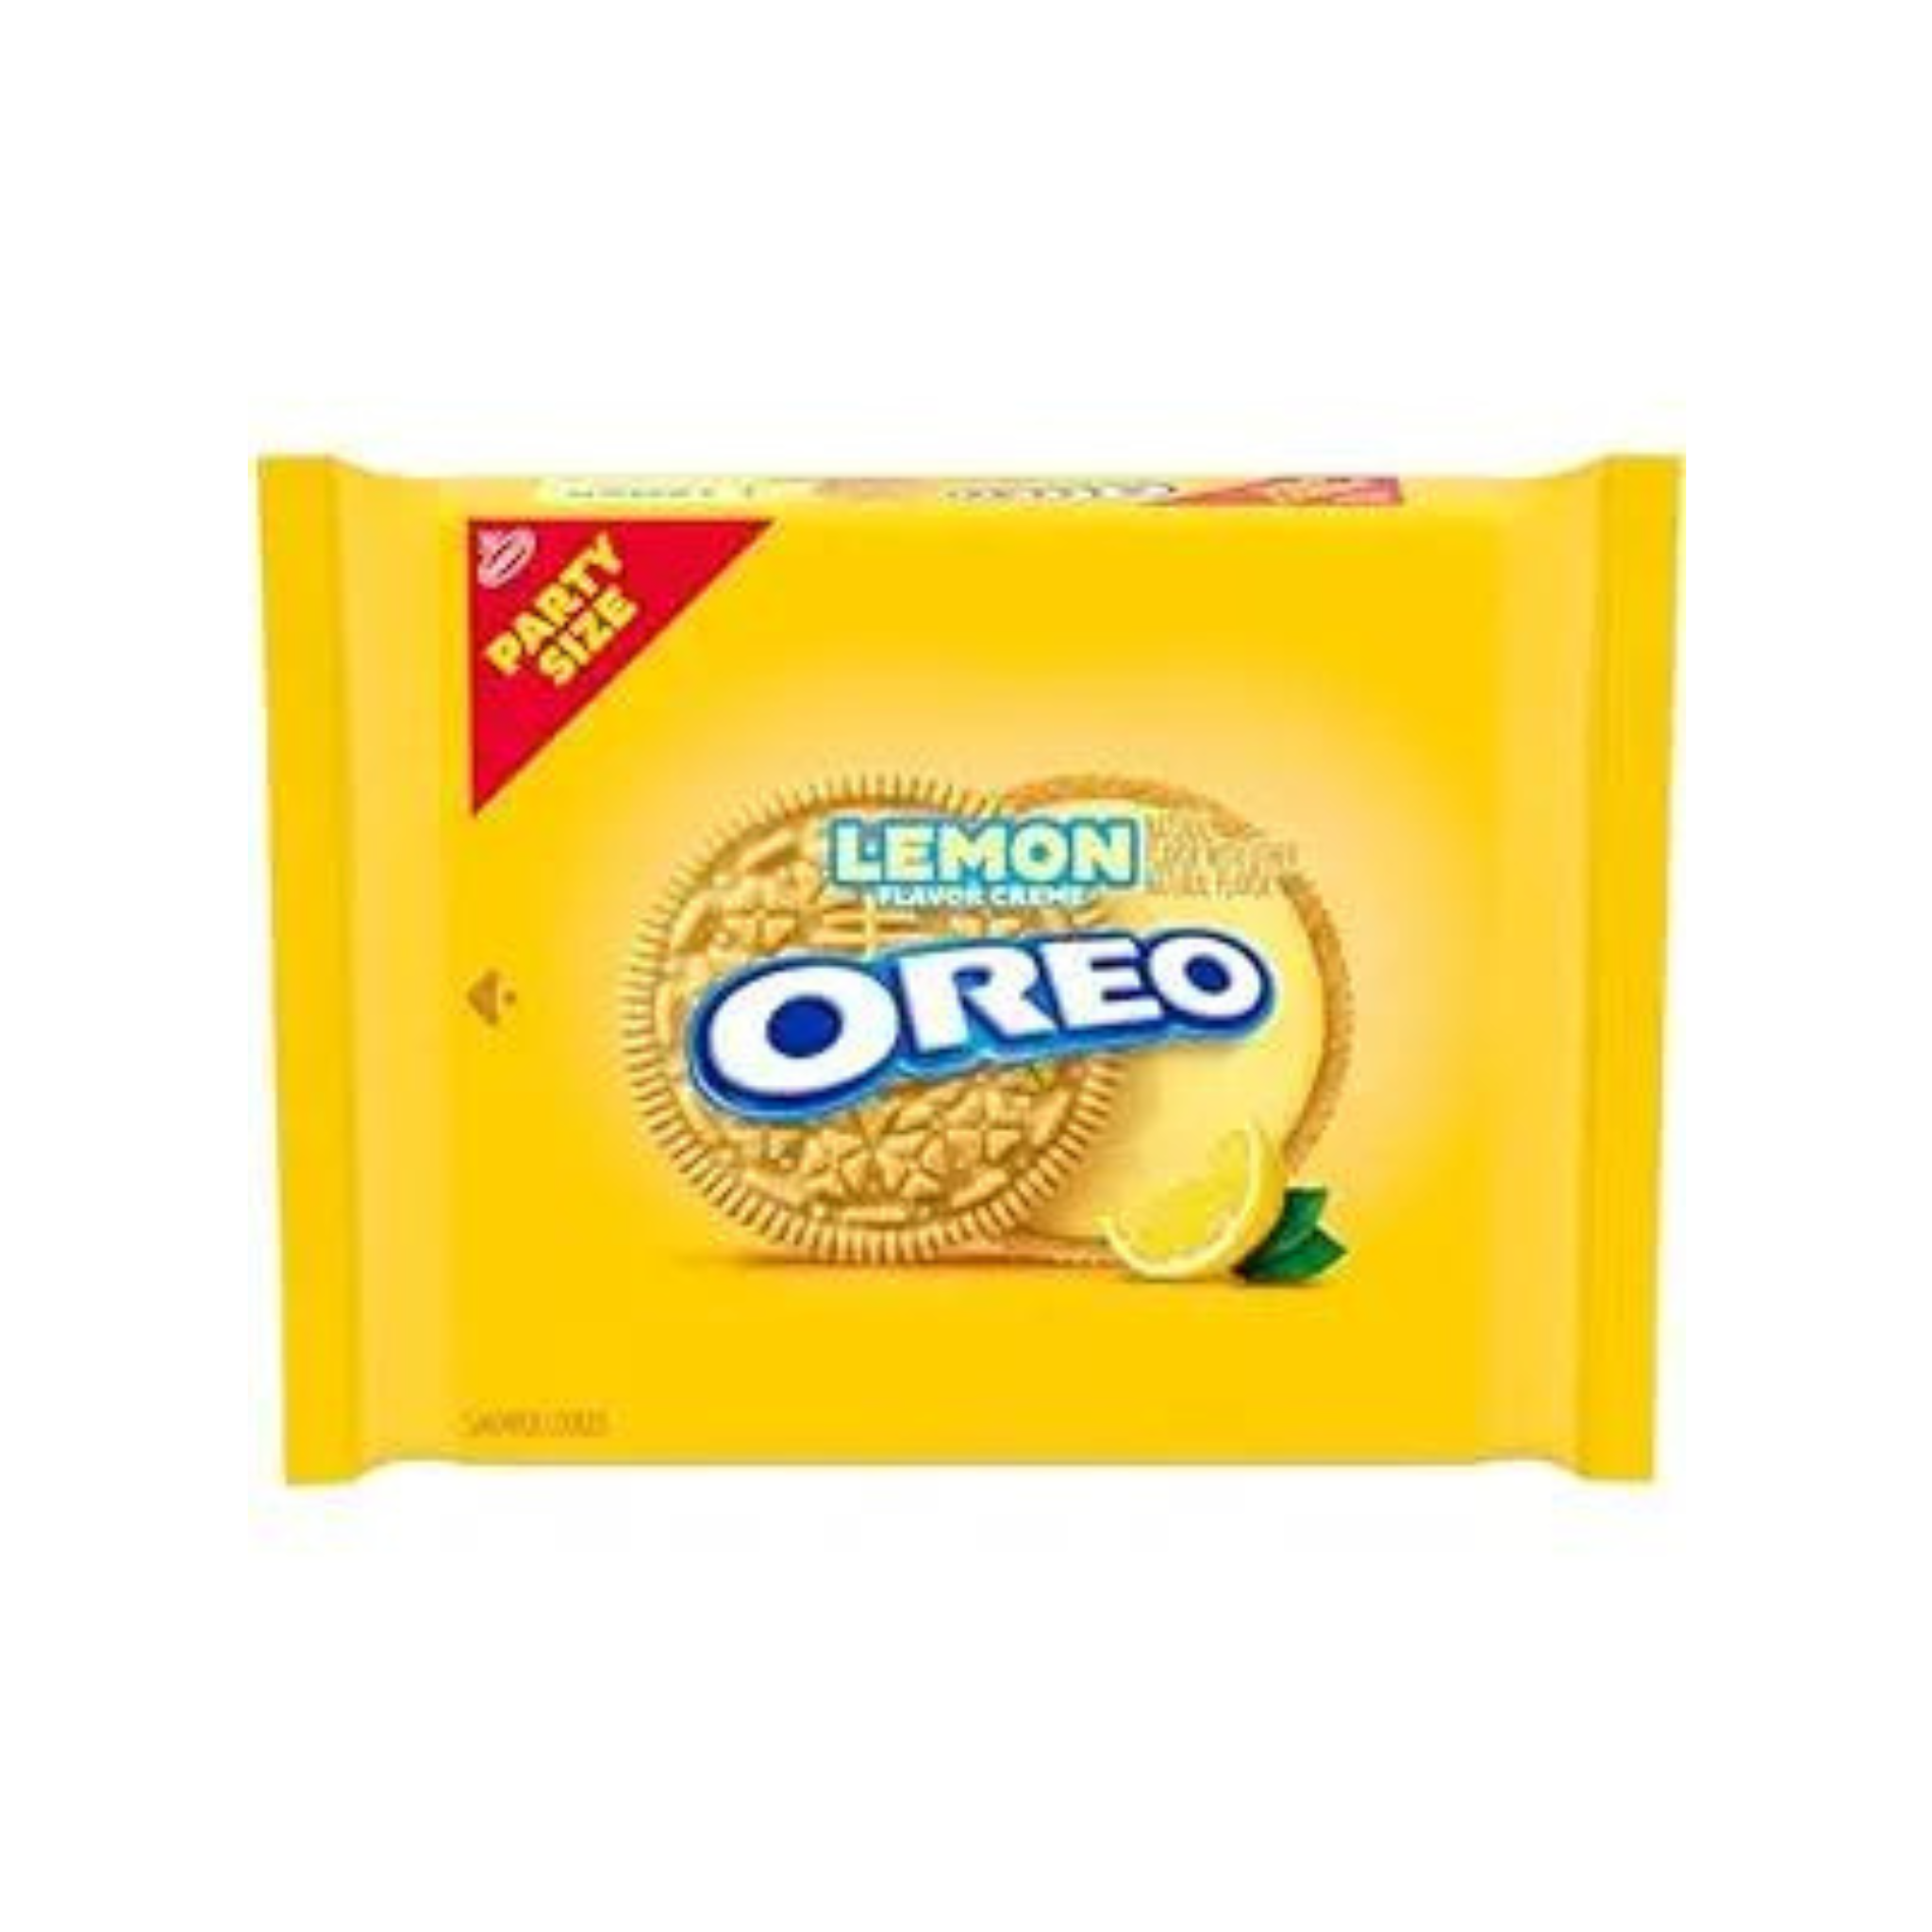 24.95-Oz OREO Lemon Creme Sandwich Cookies